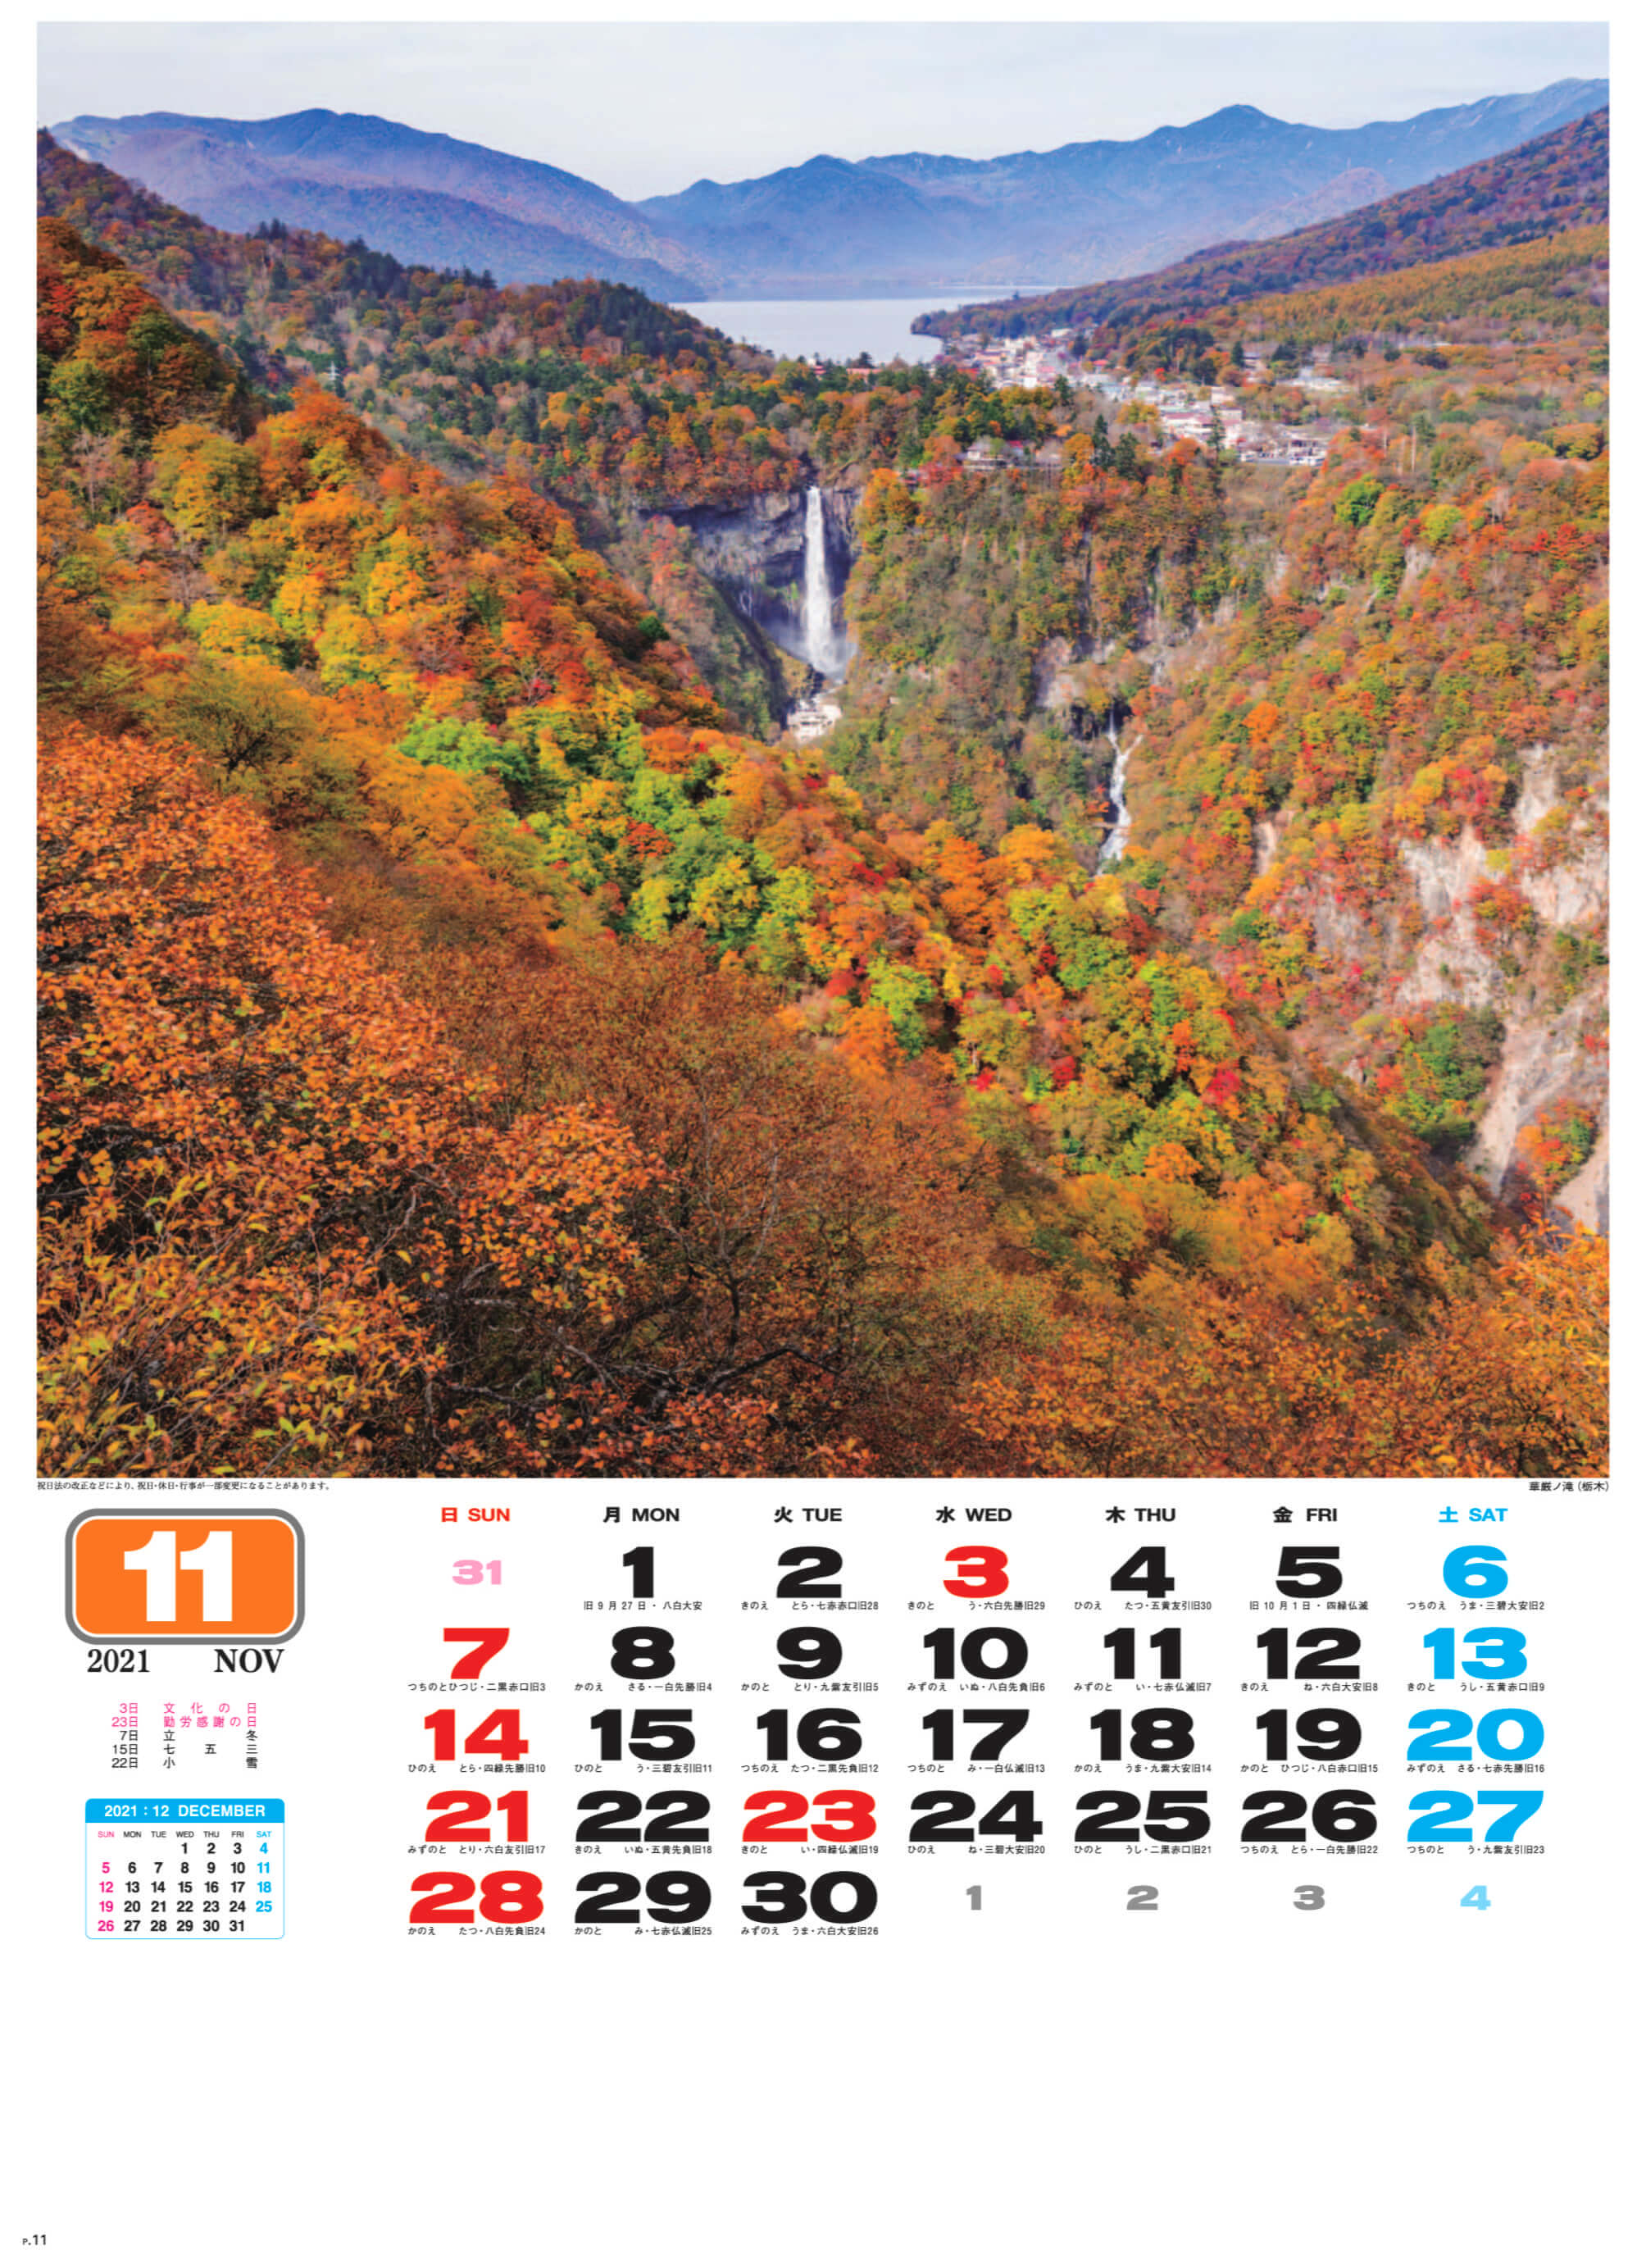 華厳の滝(栃木)華厳の滝 美しき日本 2021年カレンダーの画像